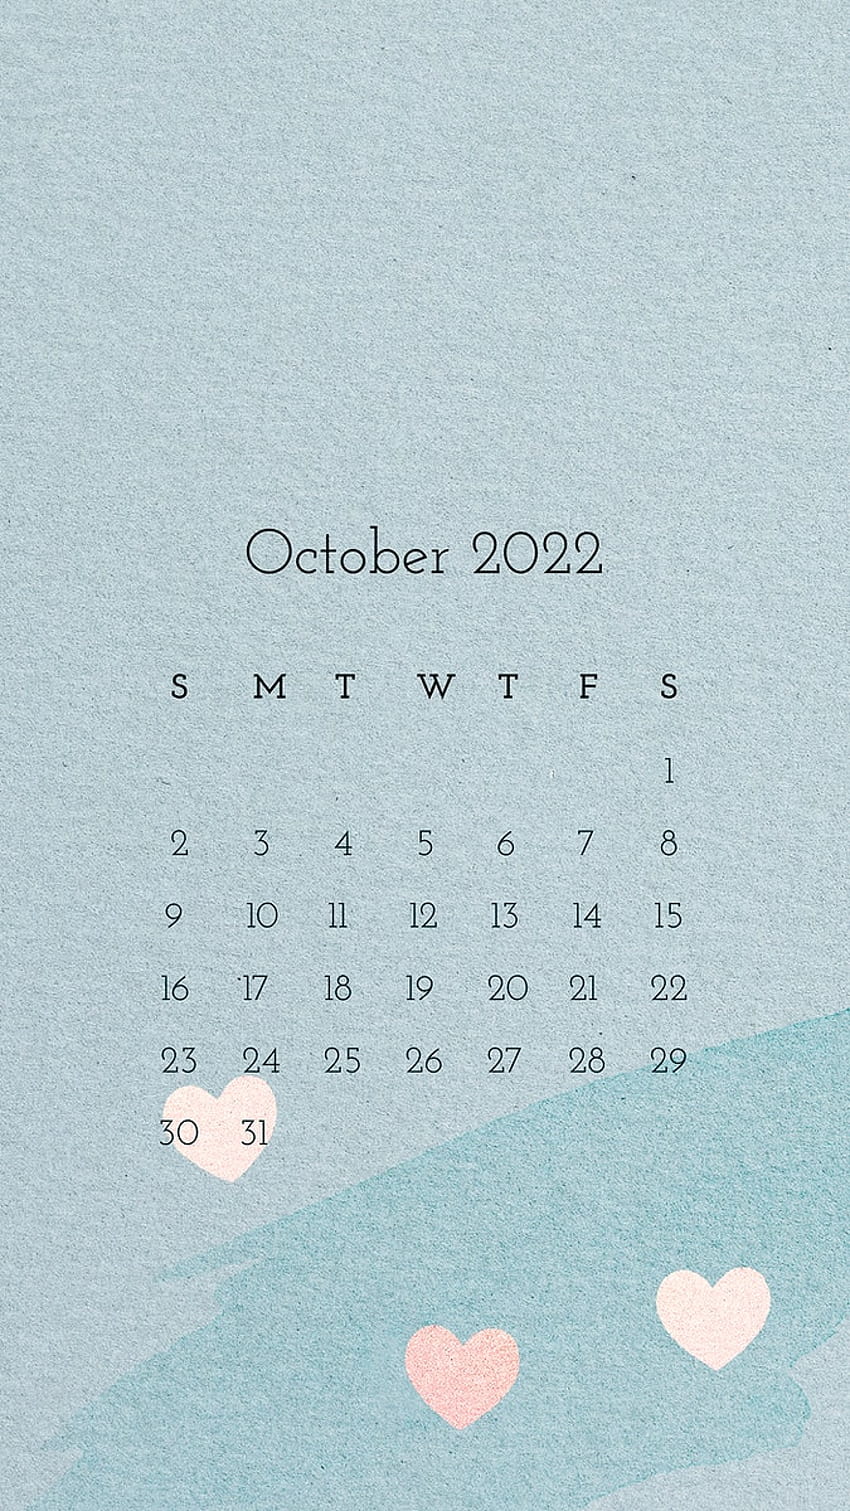 October 2021 Calendar Wallpapers  PixelsTalkNet